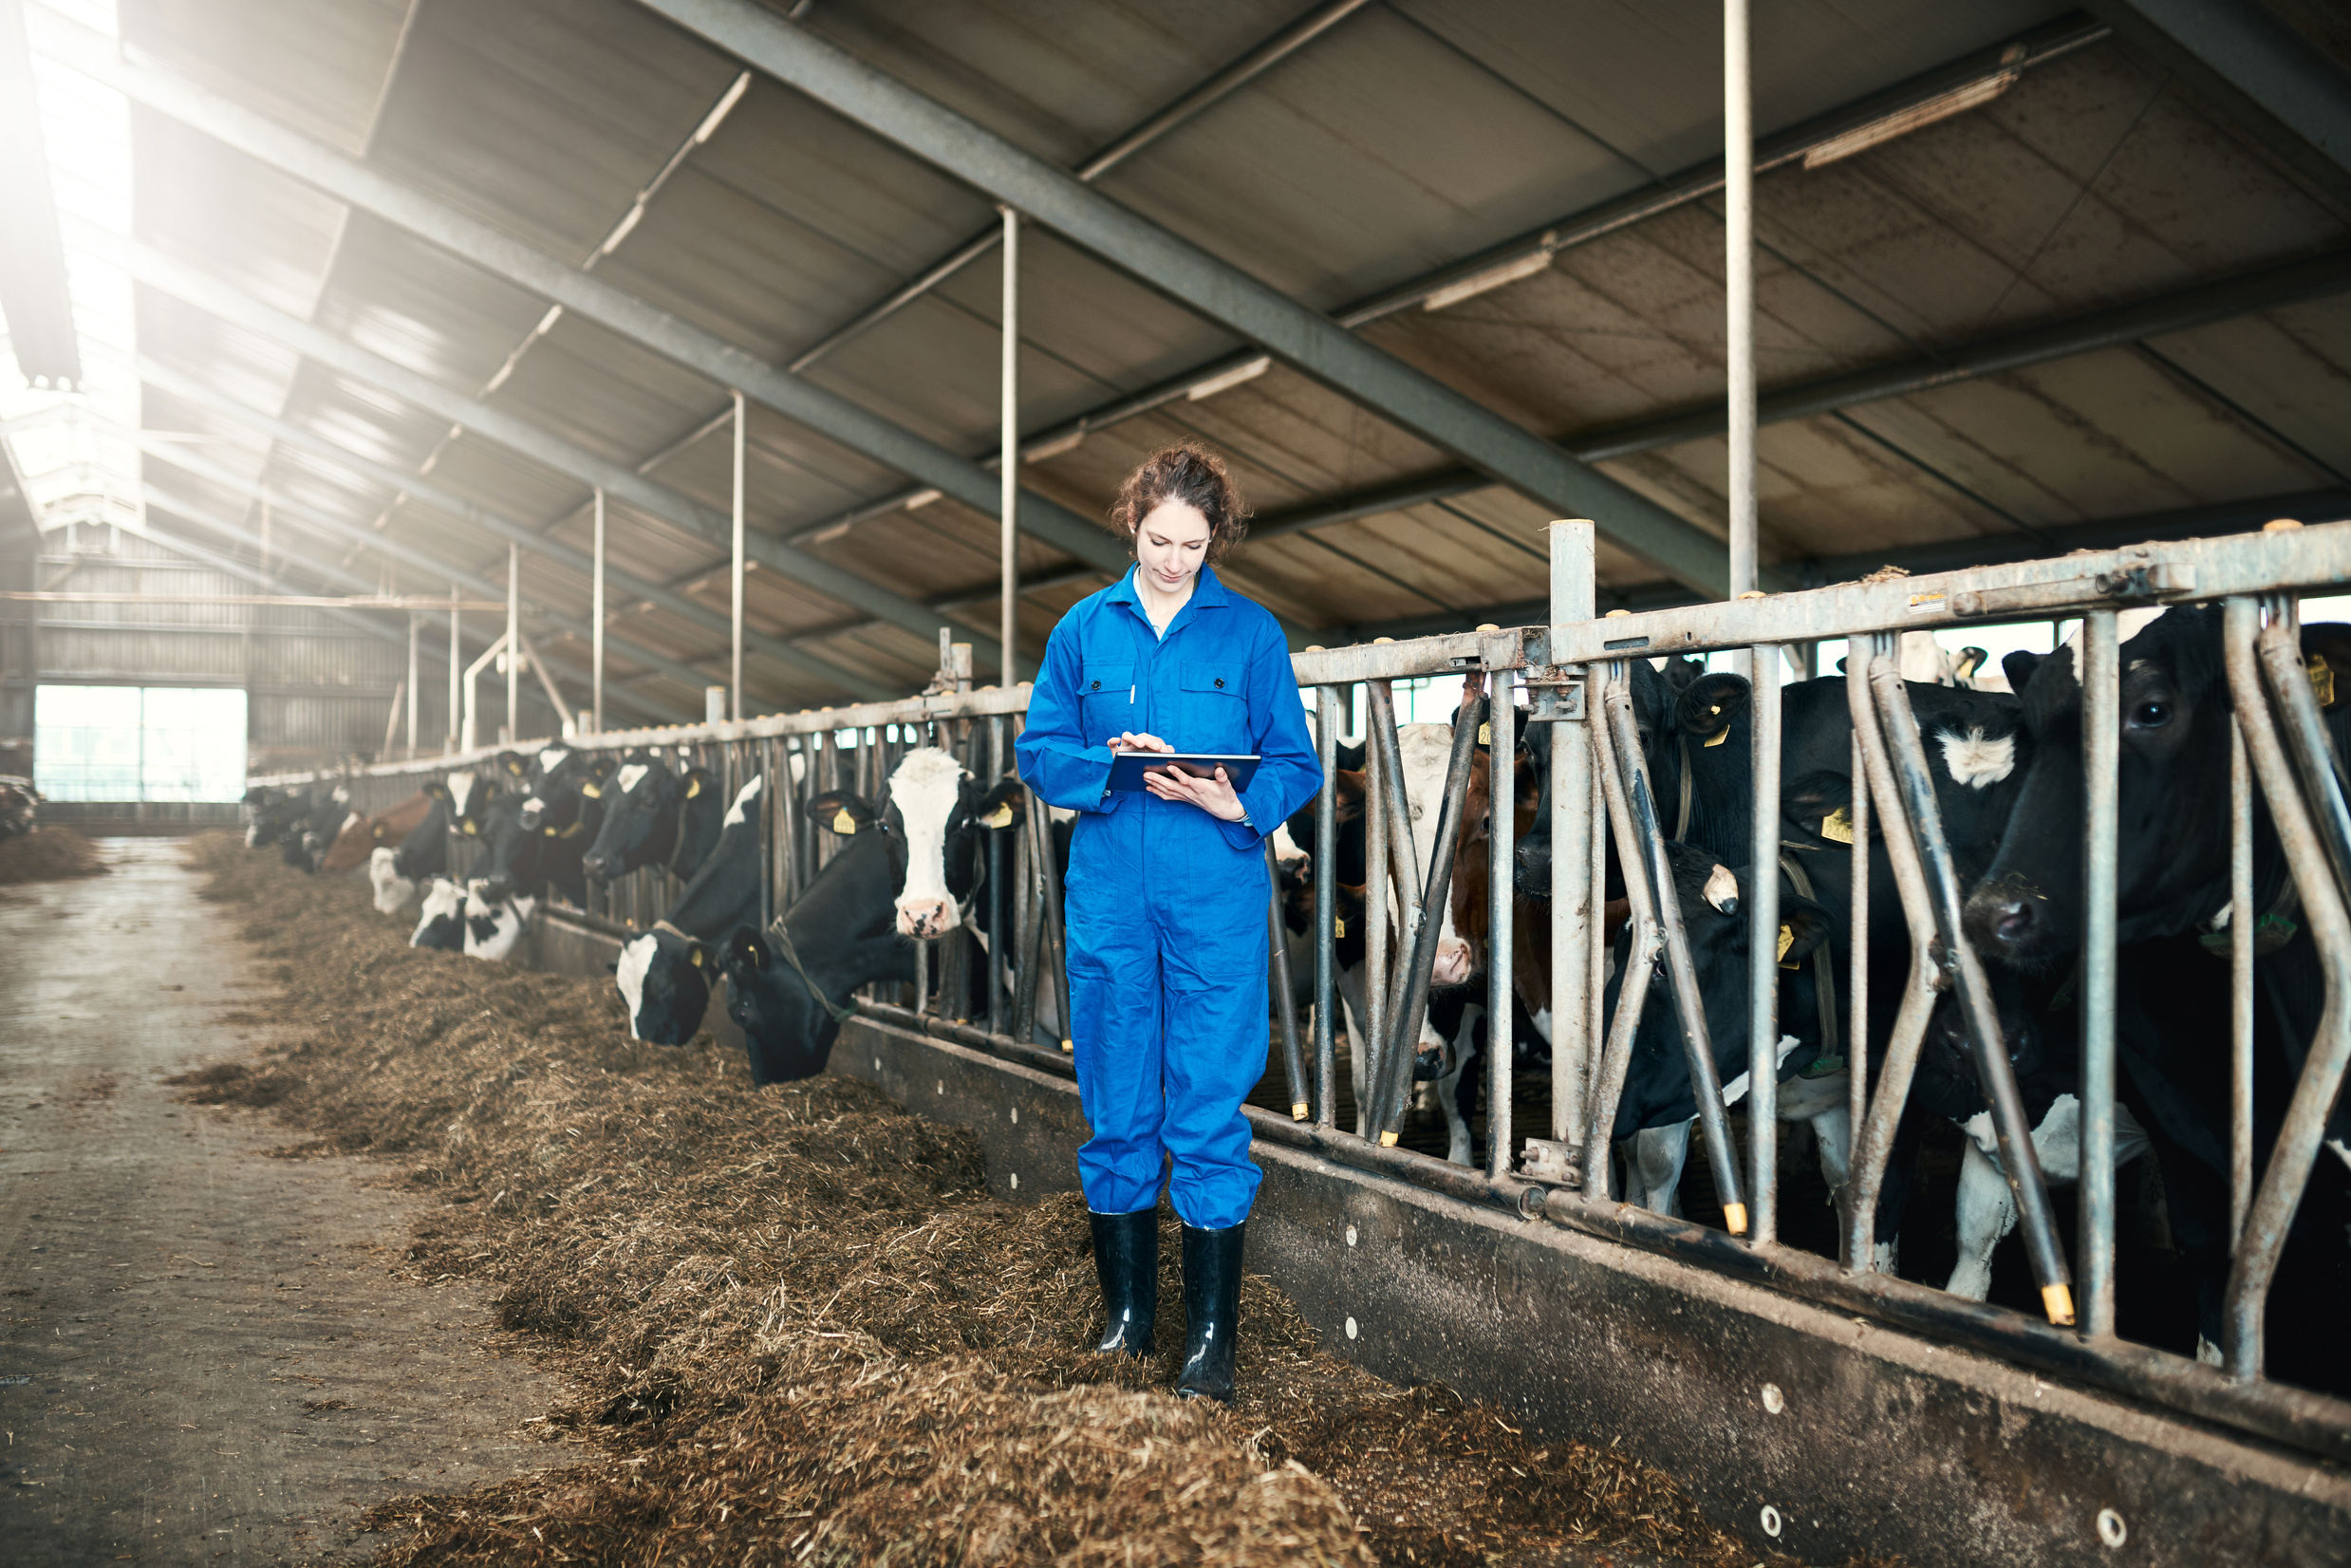 The digital dairy farmer